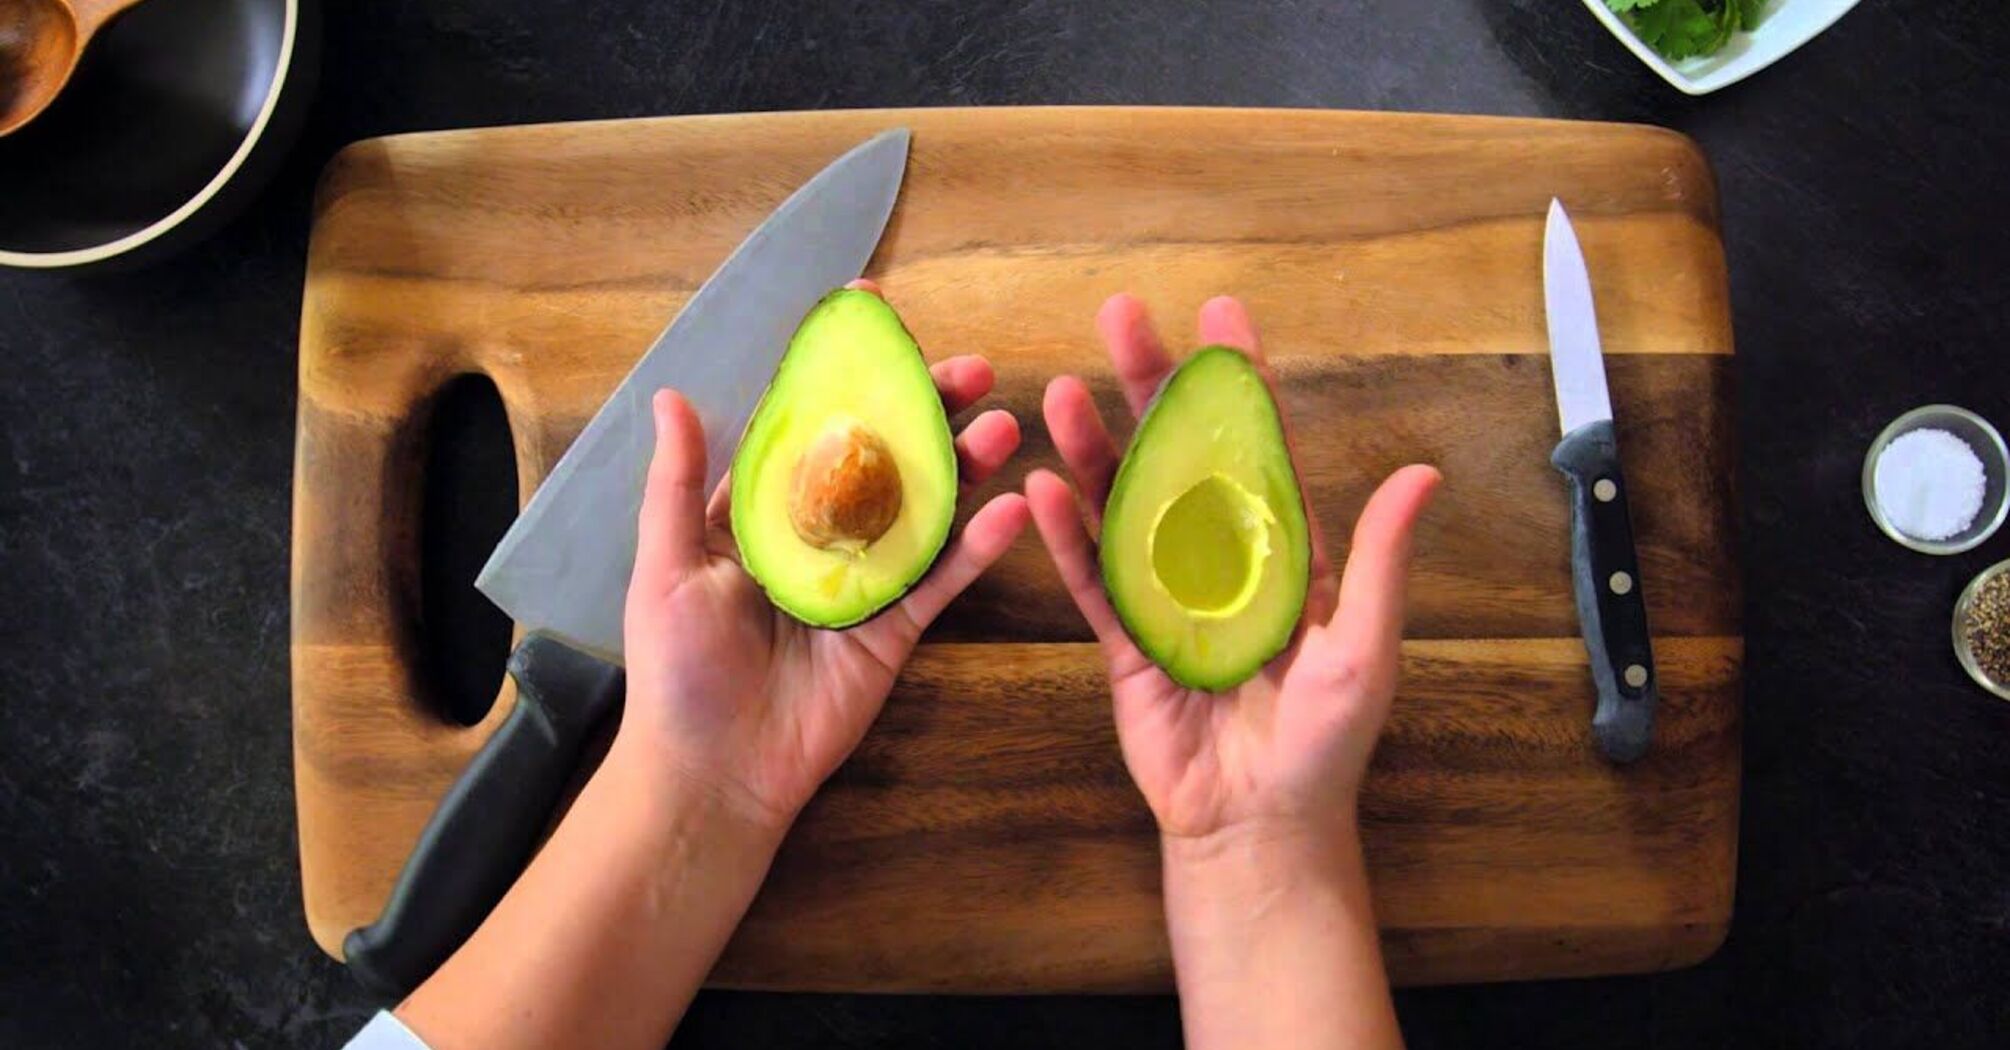 How to cut avocado